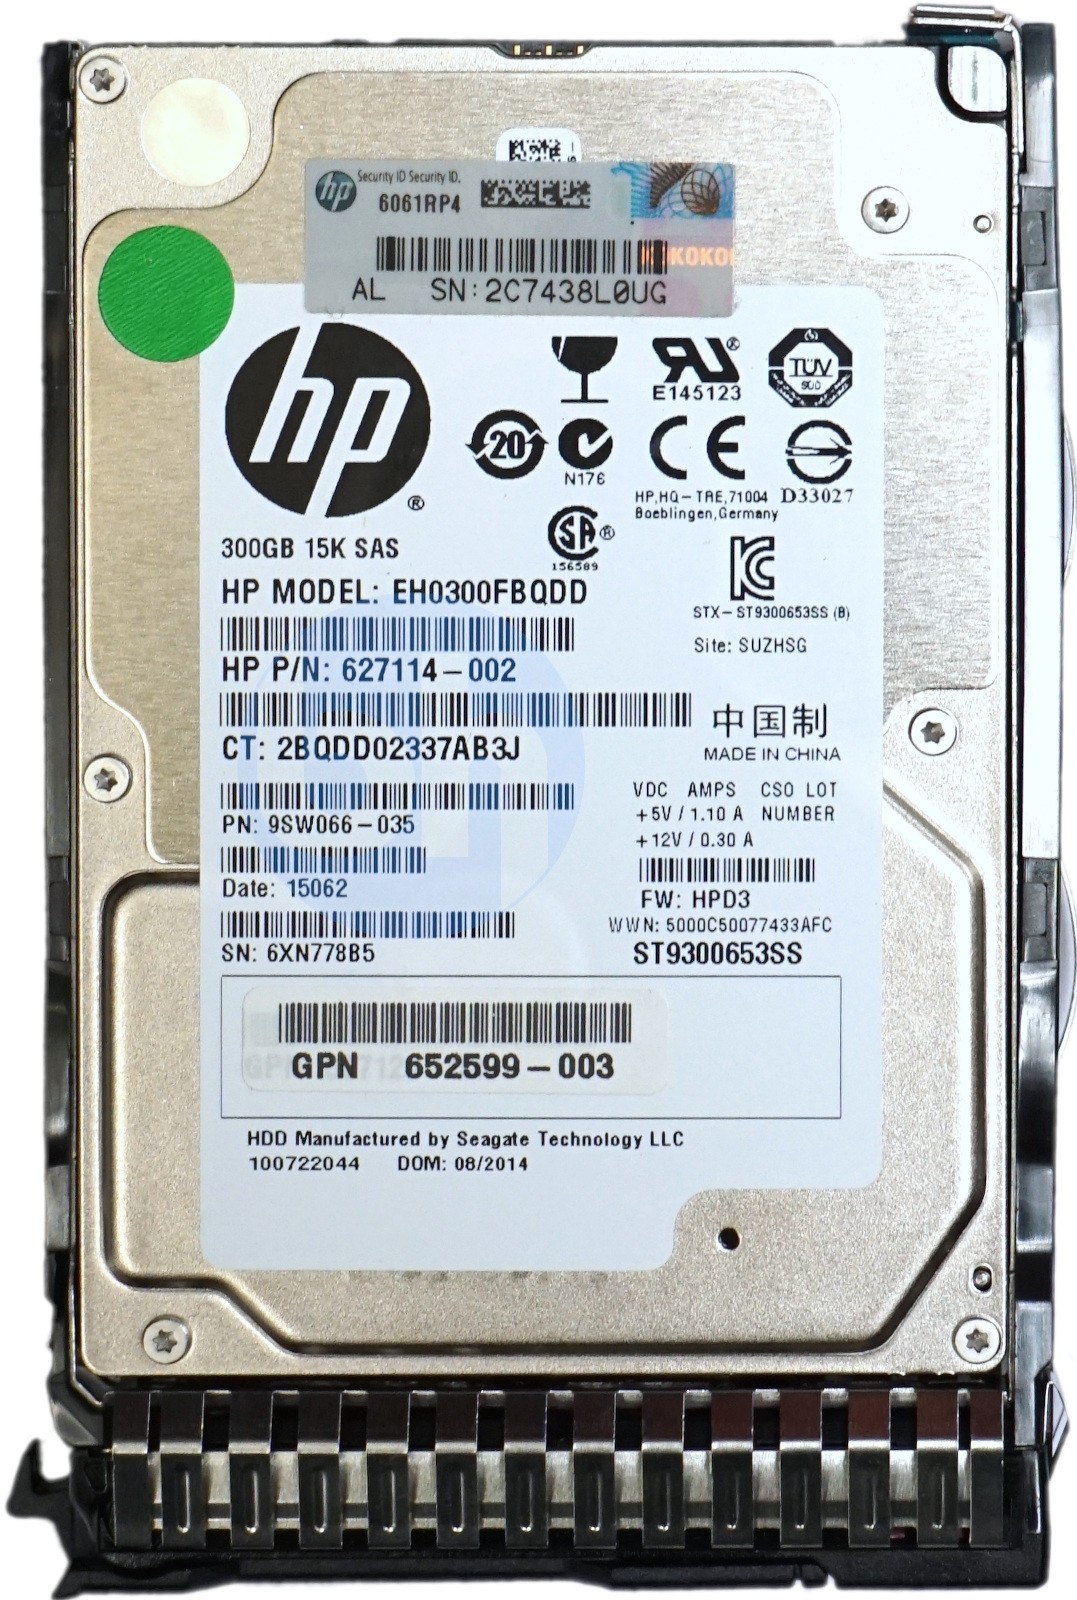 HP (627114-002) 300GB SAS-2 (2.5") 6Gbps 15K HDD in Smart Gen8/Gen9 Carrier